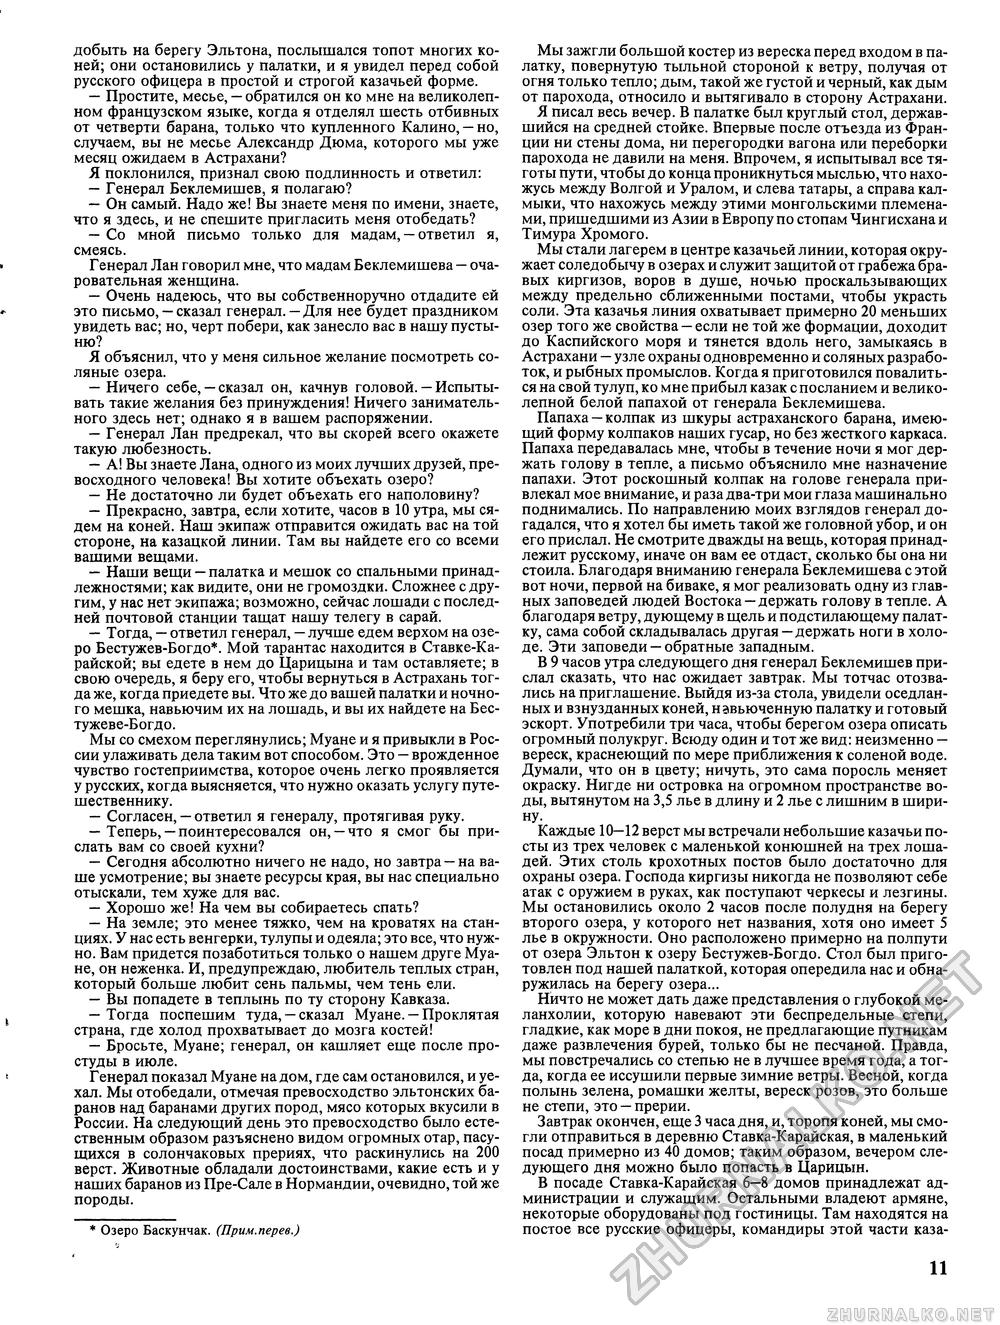 Вокруг света 1991-06, страница 13